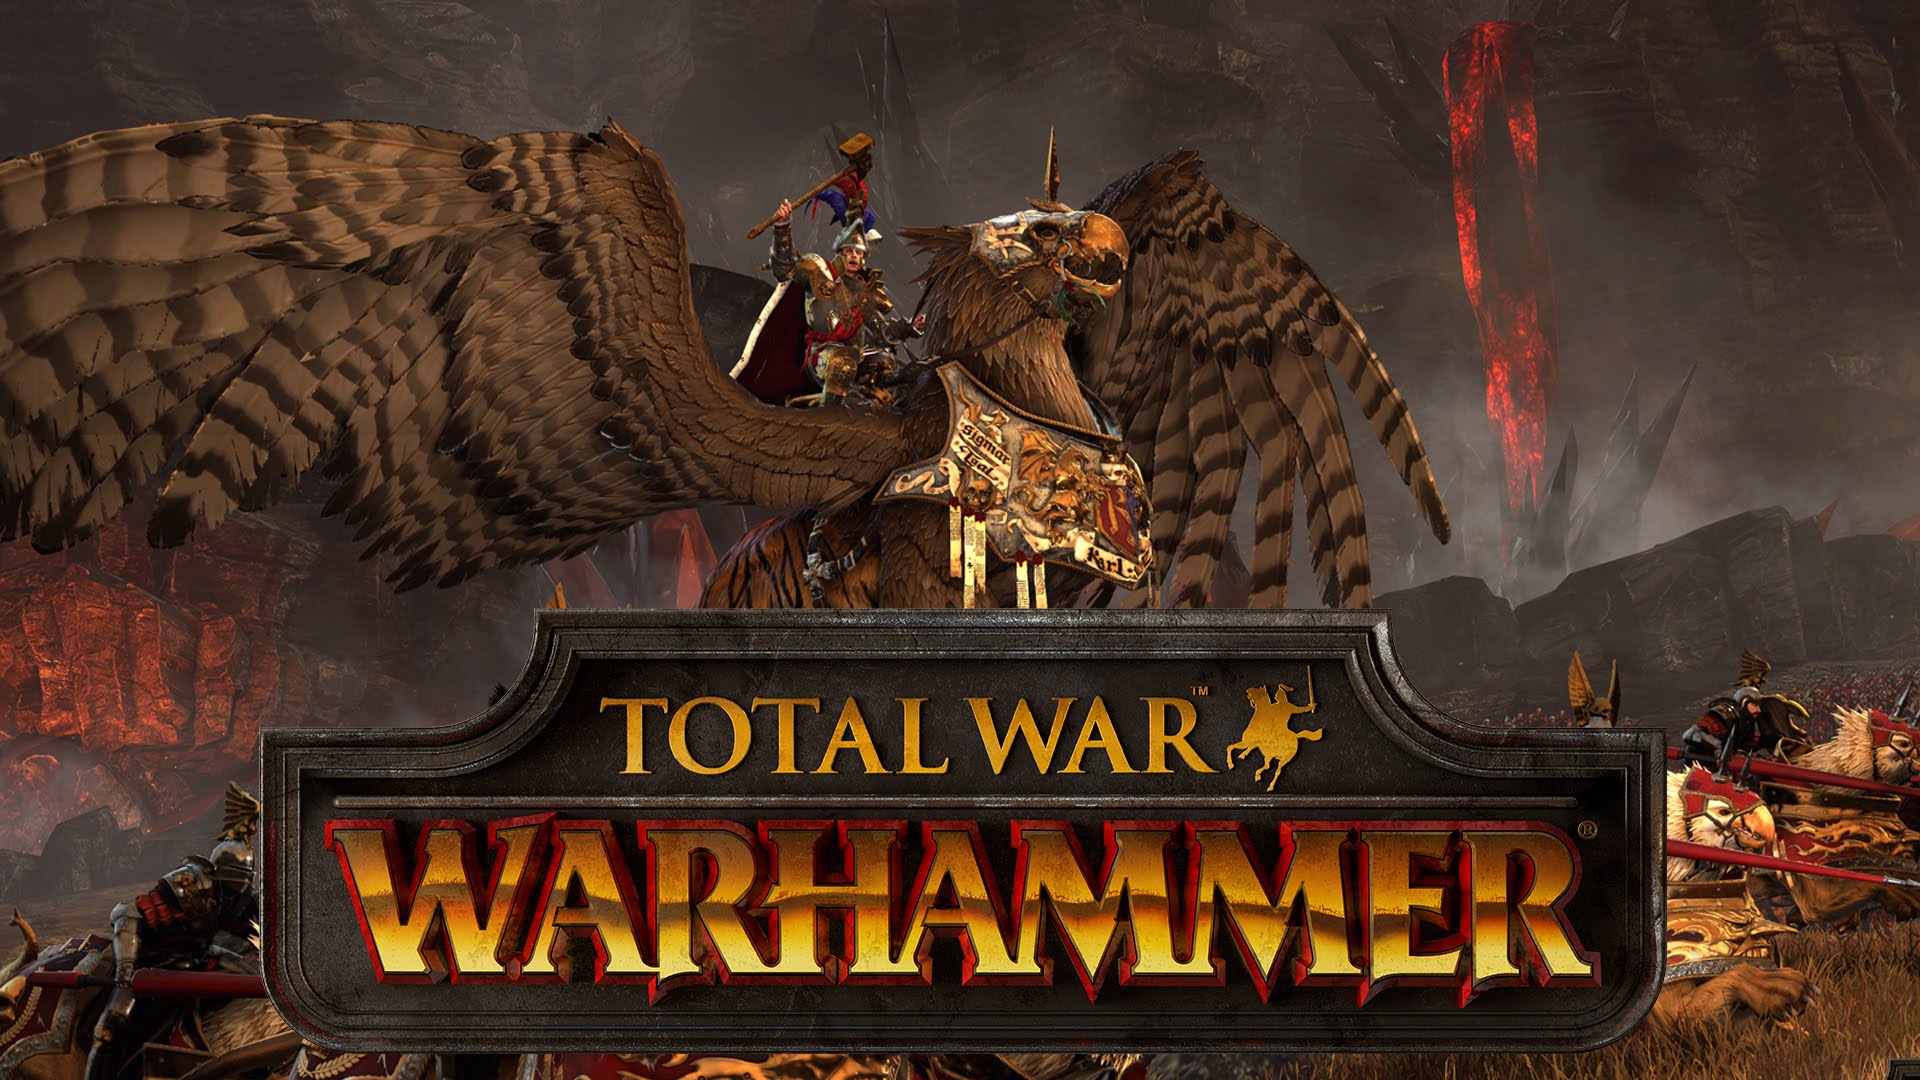 High Resolution Wallpaper | Total War: Warhammer 1920x1080 px